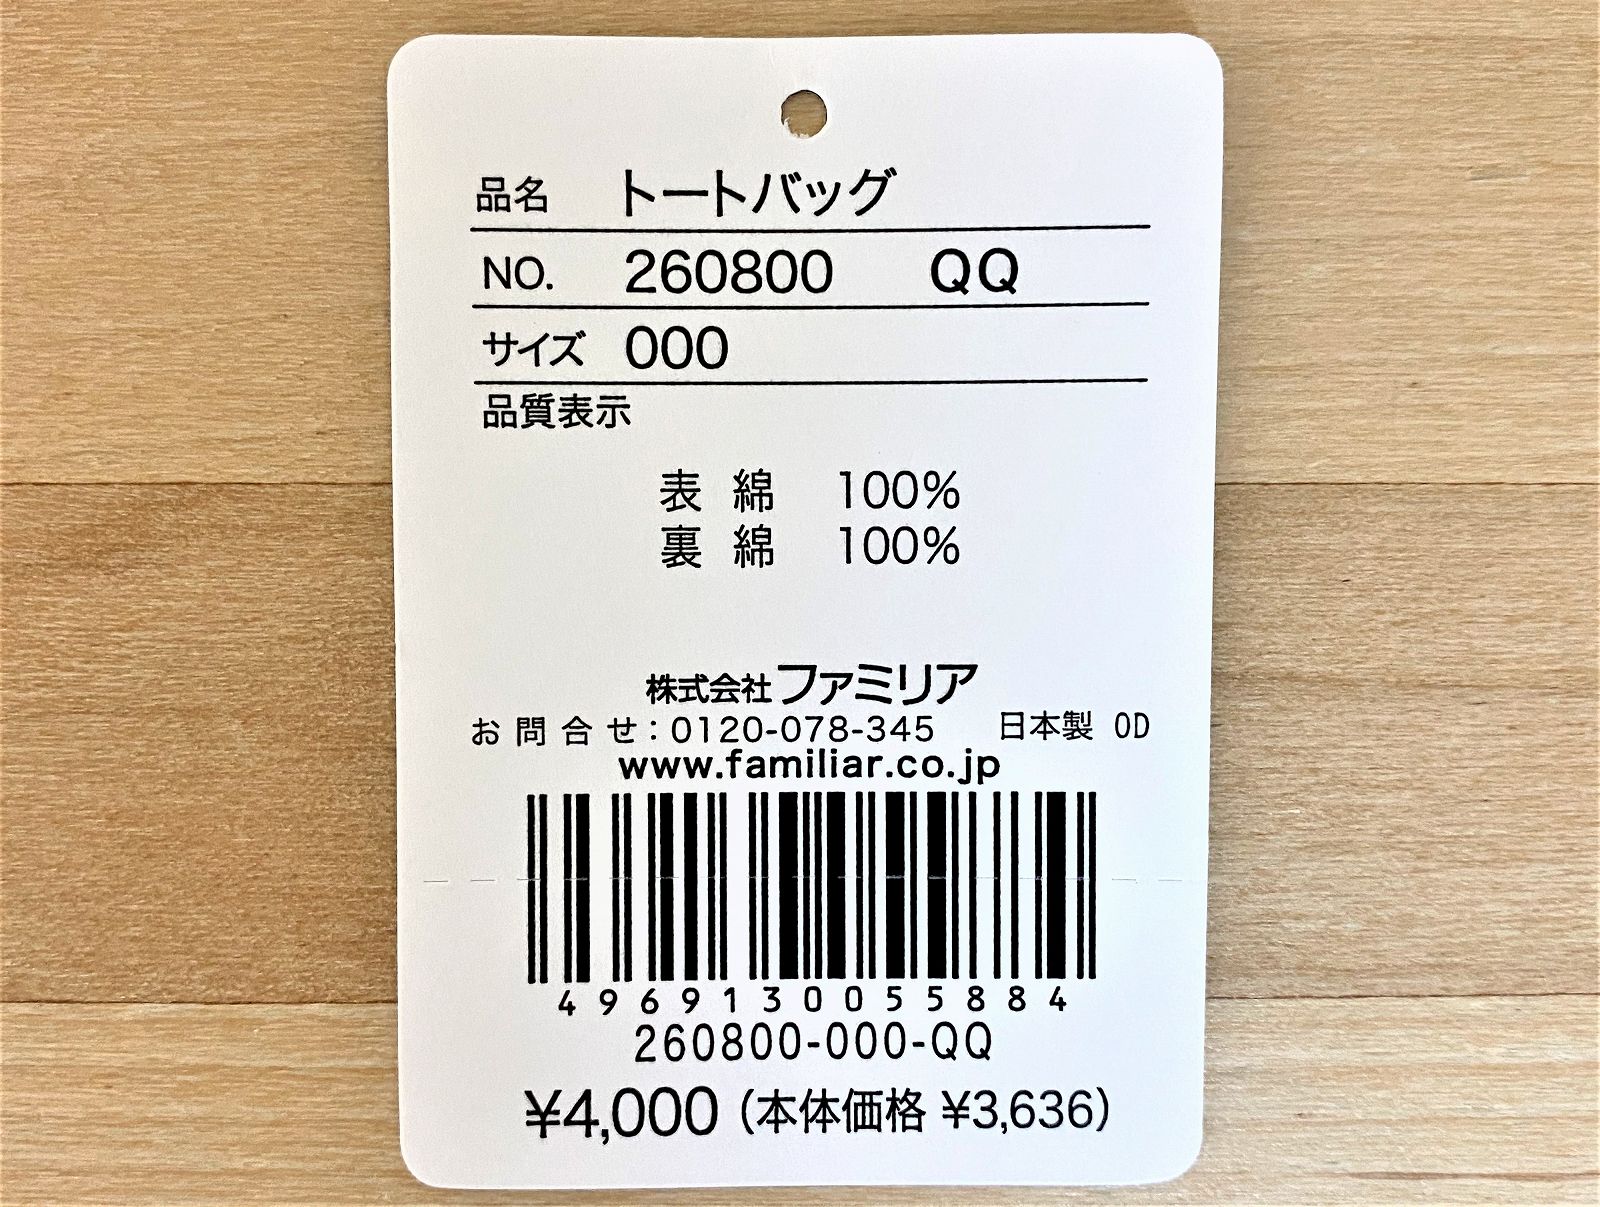 新品☆ファミリア 阪急電車 コラボ レッスンバッグ 完売品 - バッグ